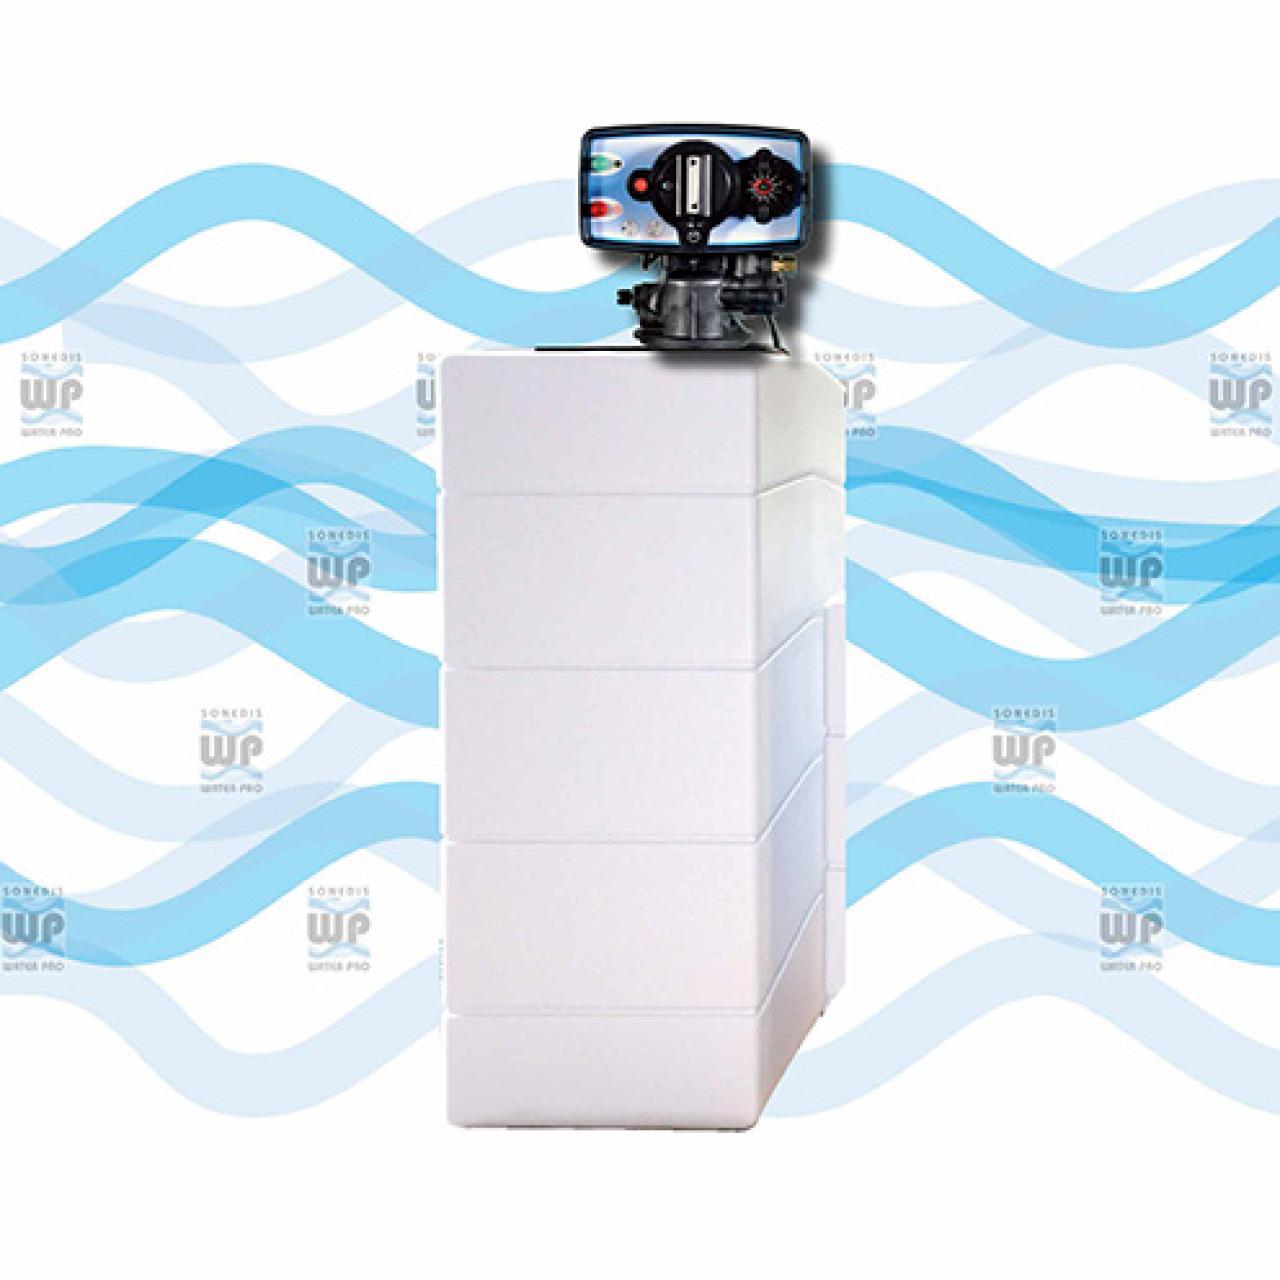 Sonedis Water Pro - Composants pour le traitement de l'eau